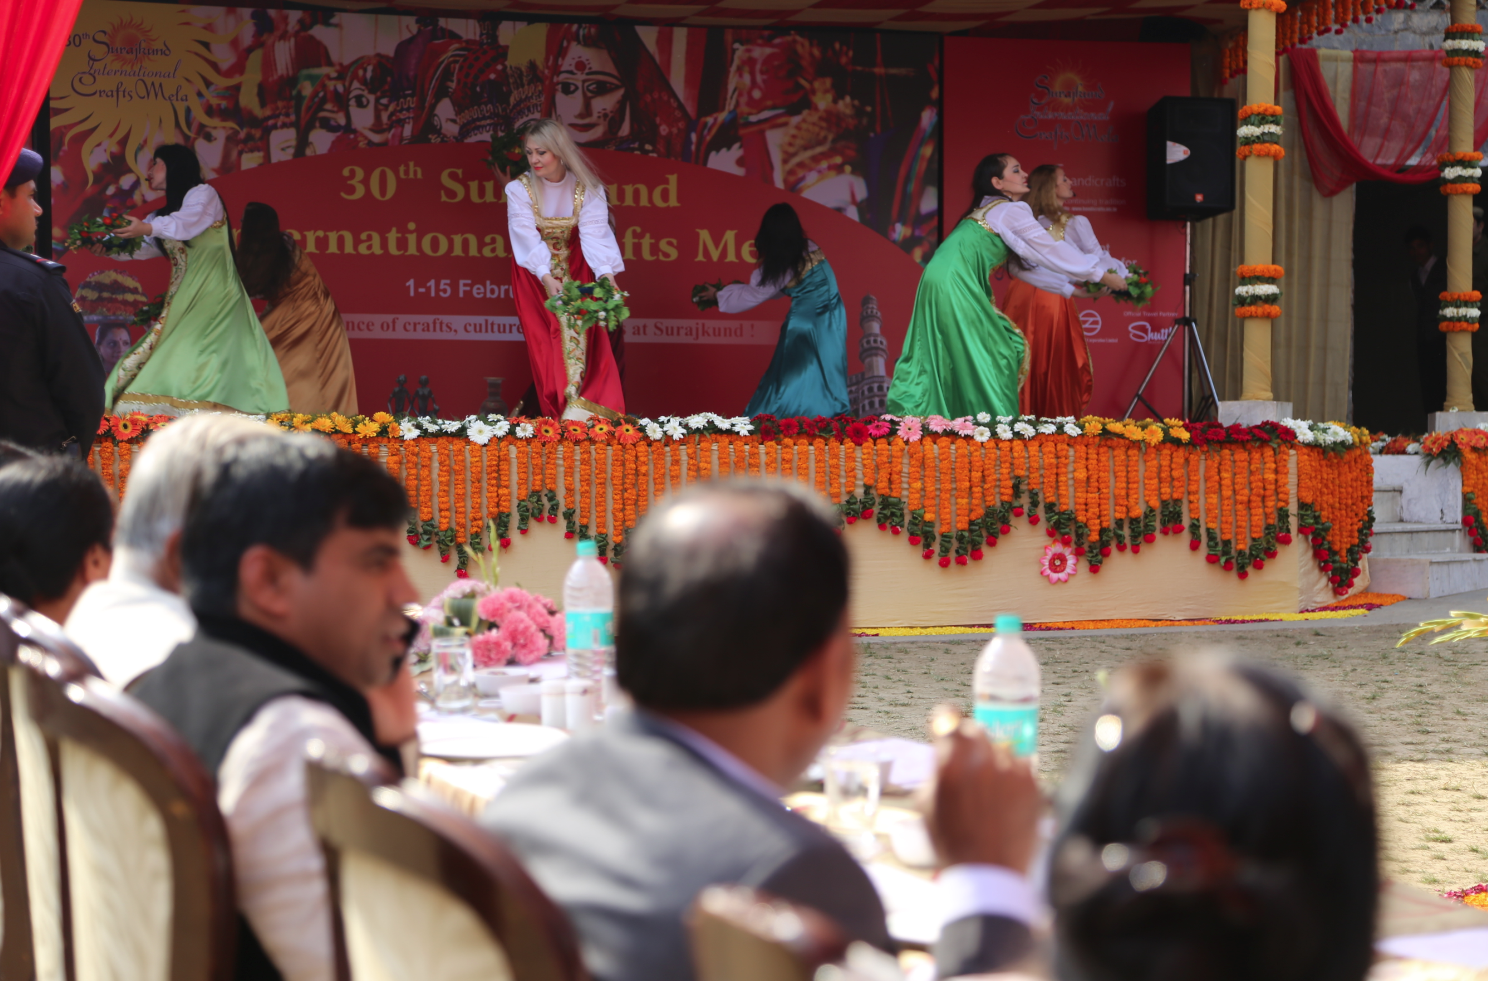 KrasA (Beauty) Ensemble of Folk Song at the international Crafts Mela at Surajkund. 